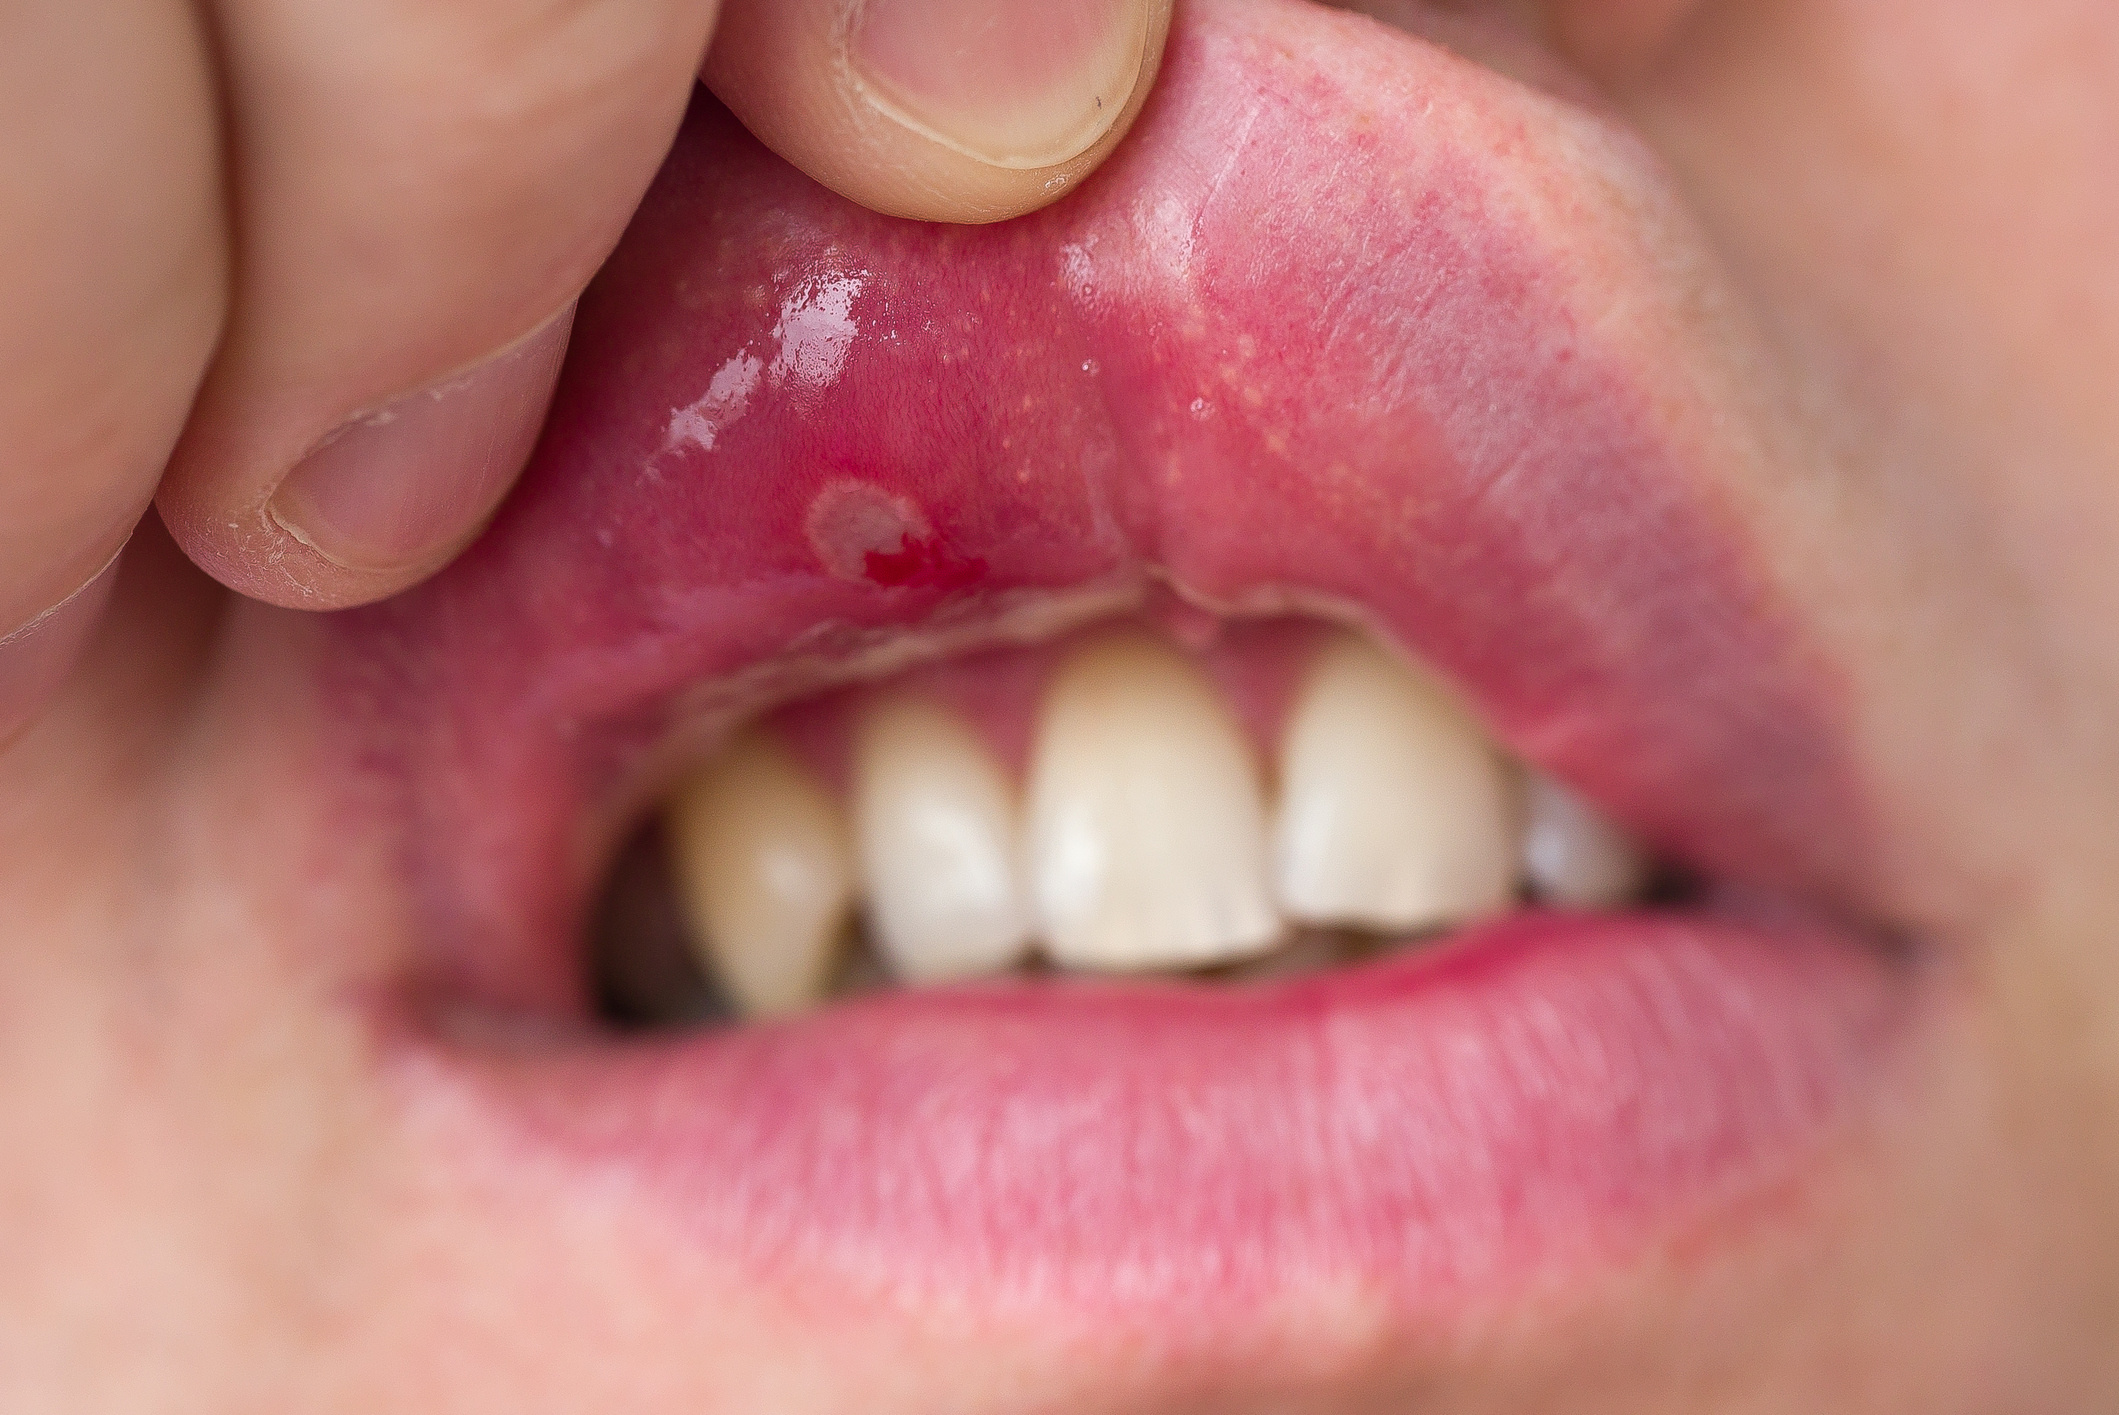 Condyloma lehet a szájban, HPV fertőzés a szájban - Orvos válaszol